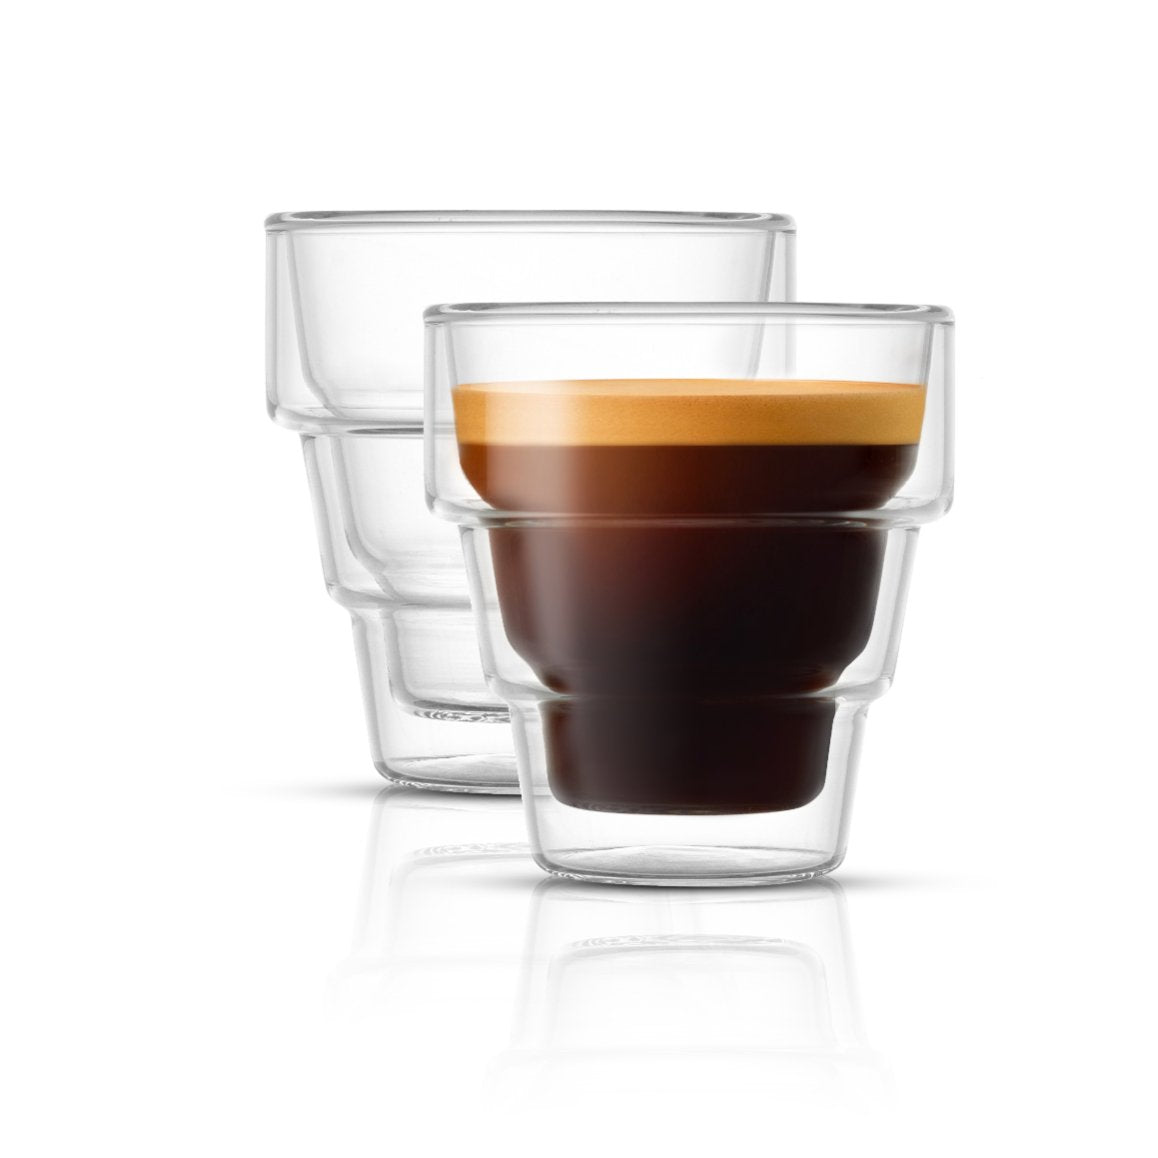 Pila Double Walled Espresso Glass 3 oz Cups